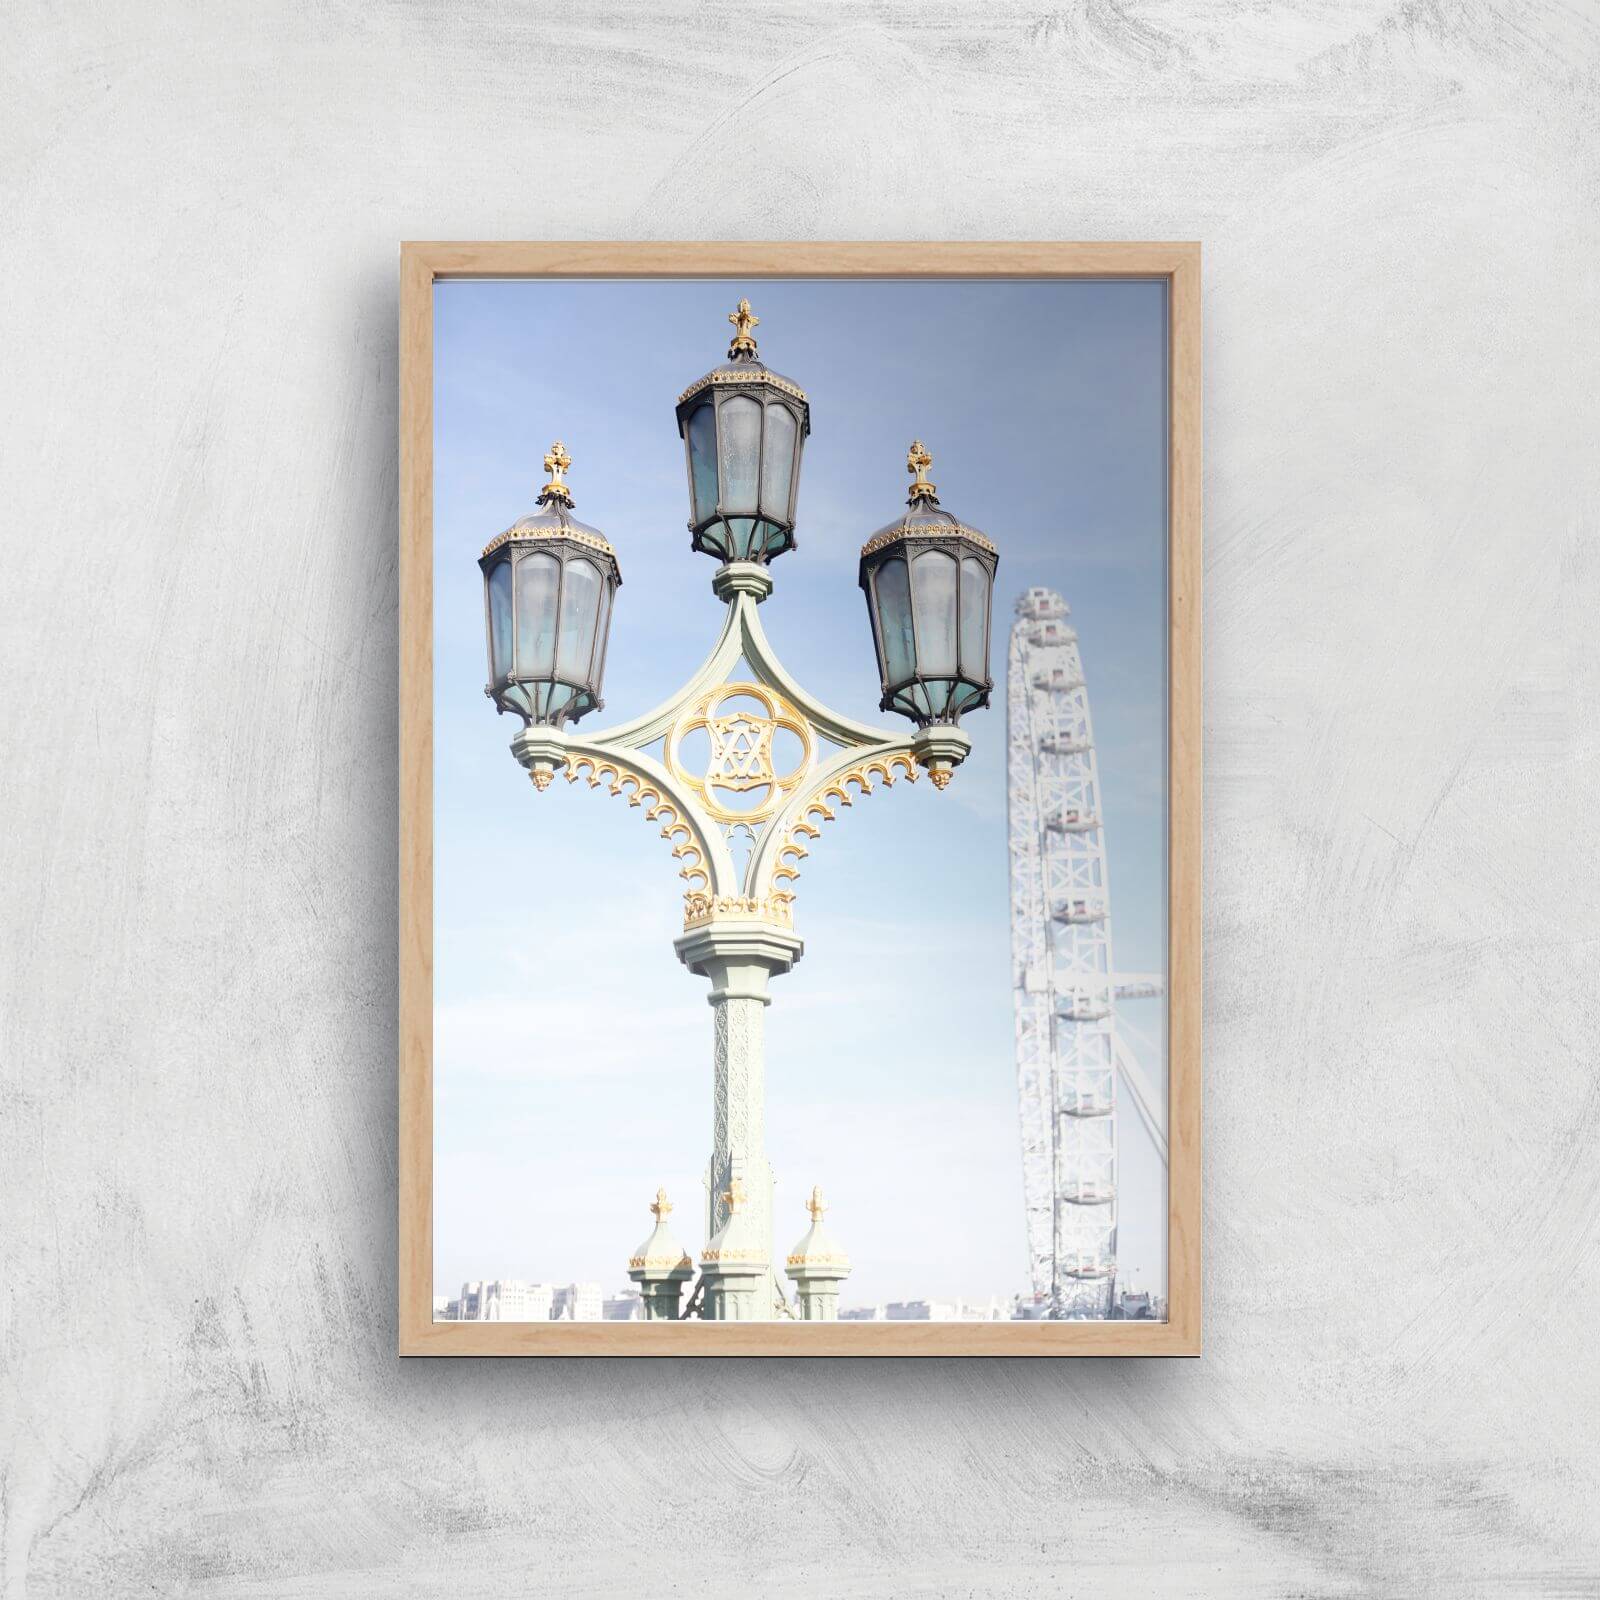 Street Lamps Giclee Art Print - A3 - Wooden Frame